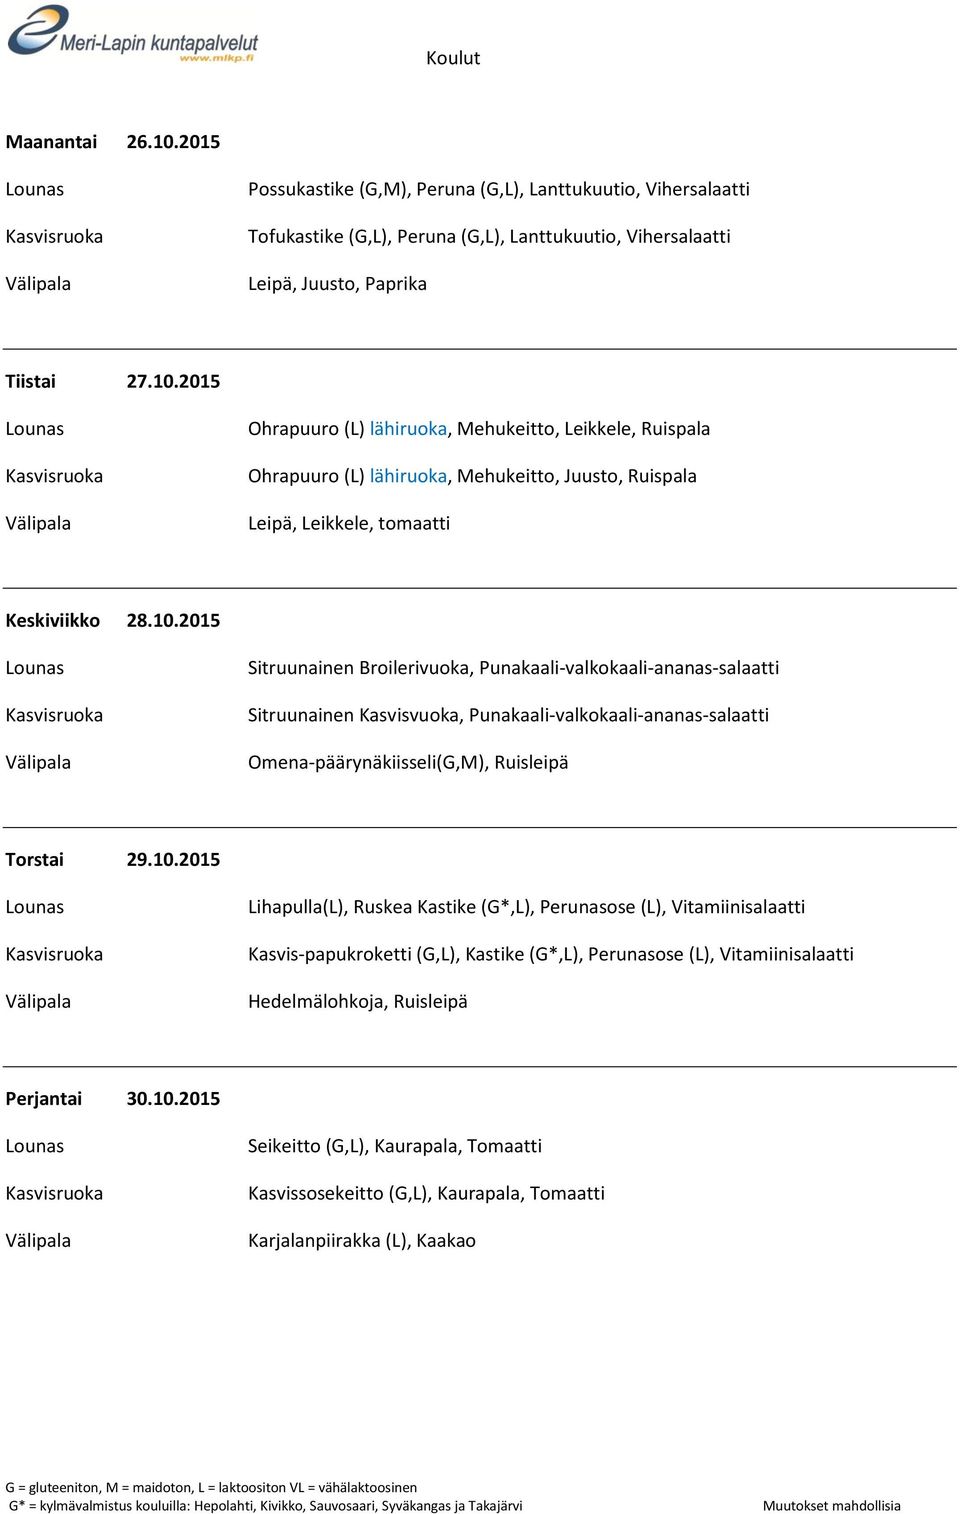 10.2015 Seikeitto (G,L), Kaurapala, Tomaatti Kasvissosekeitto (G,L), Kaurapala, Tomaatti Karjalanpiirakka (L), Kaakao